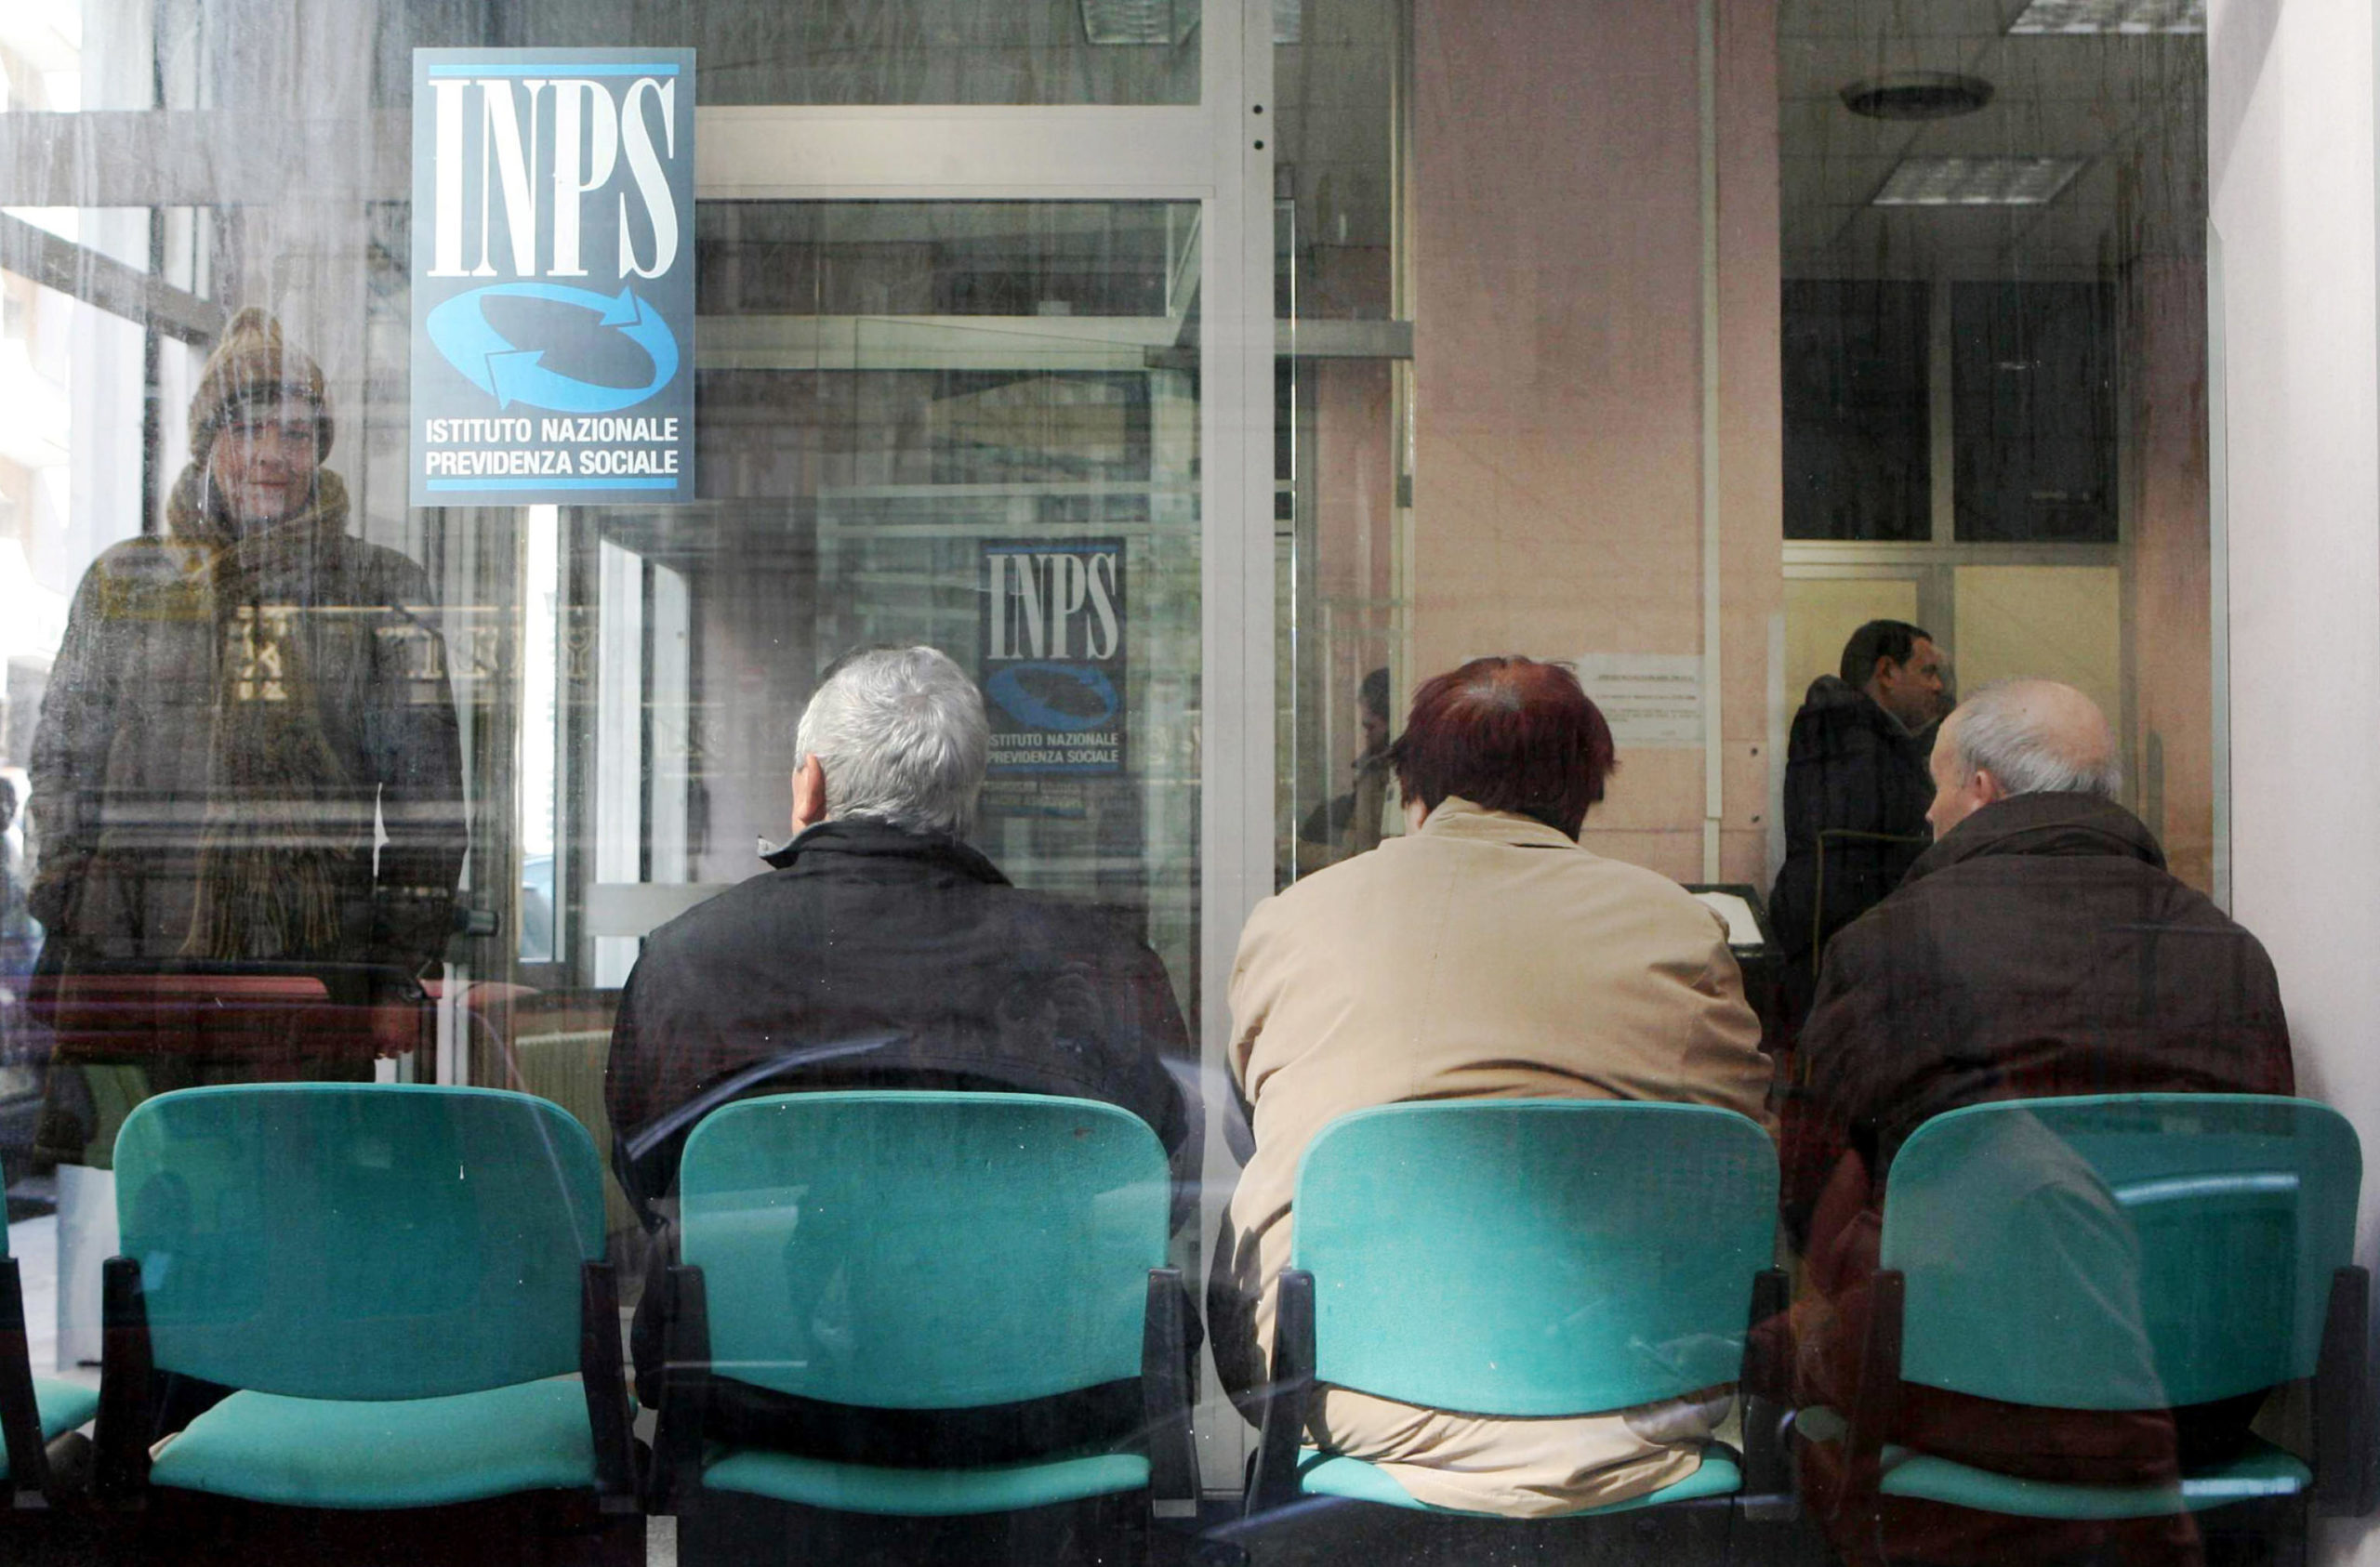 Pensionati in attesa presso un ufficio INPS di Napoli in una immagine di archivio. ANSA/CIRO FUSCO